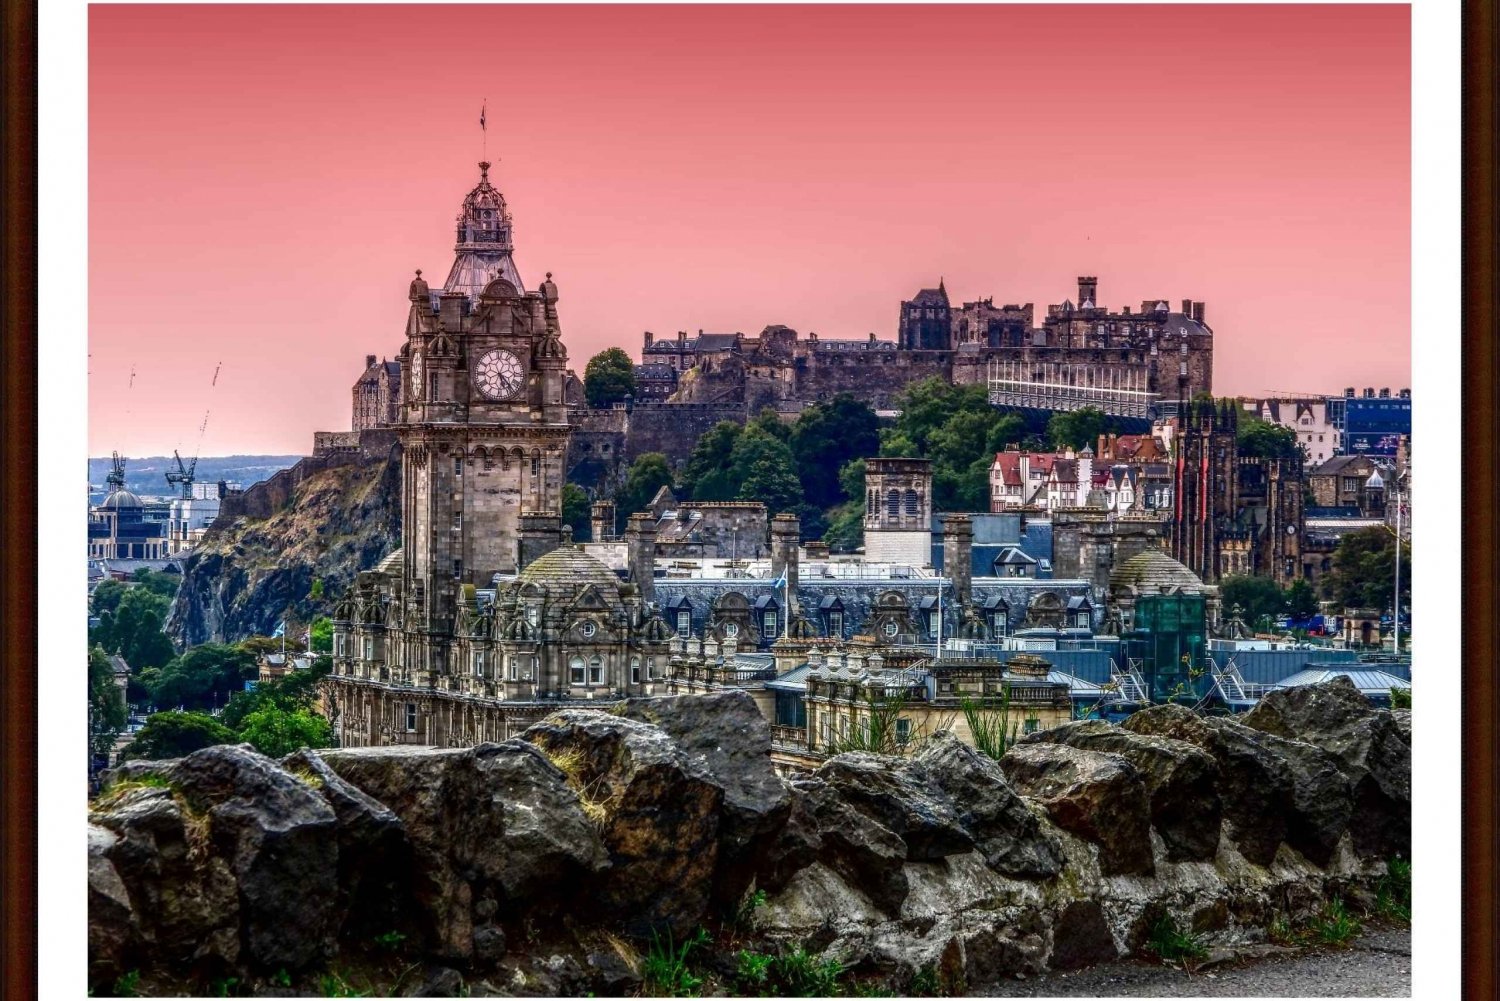 Kasteel van Edinburgh: Rondleiding met tickets inbegrepen